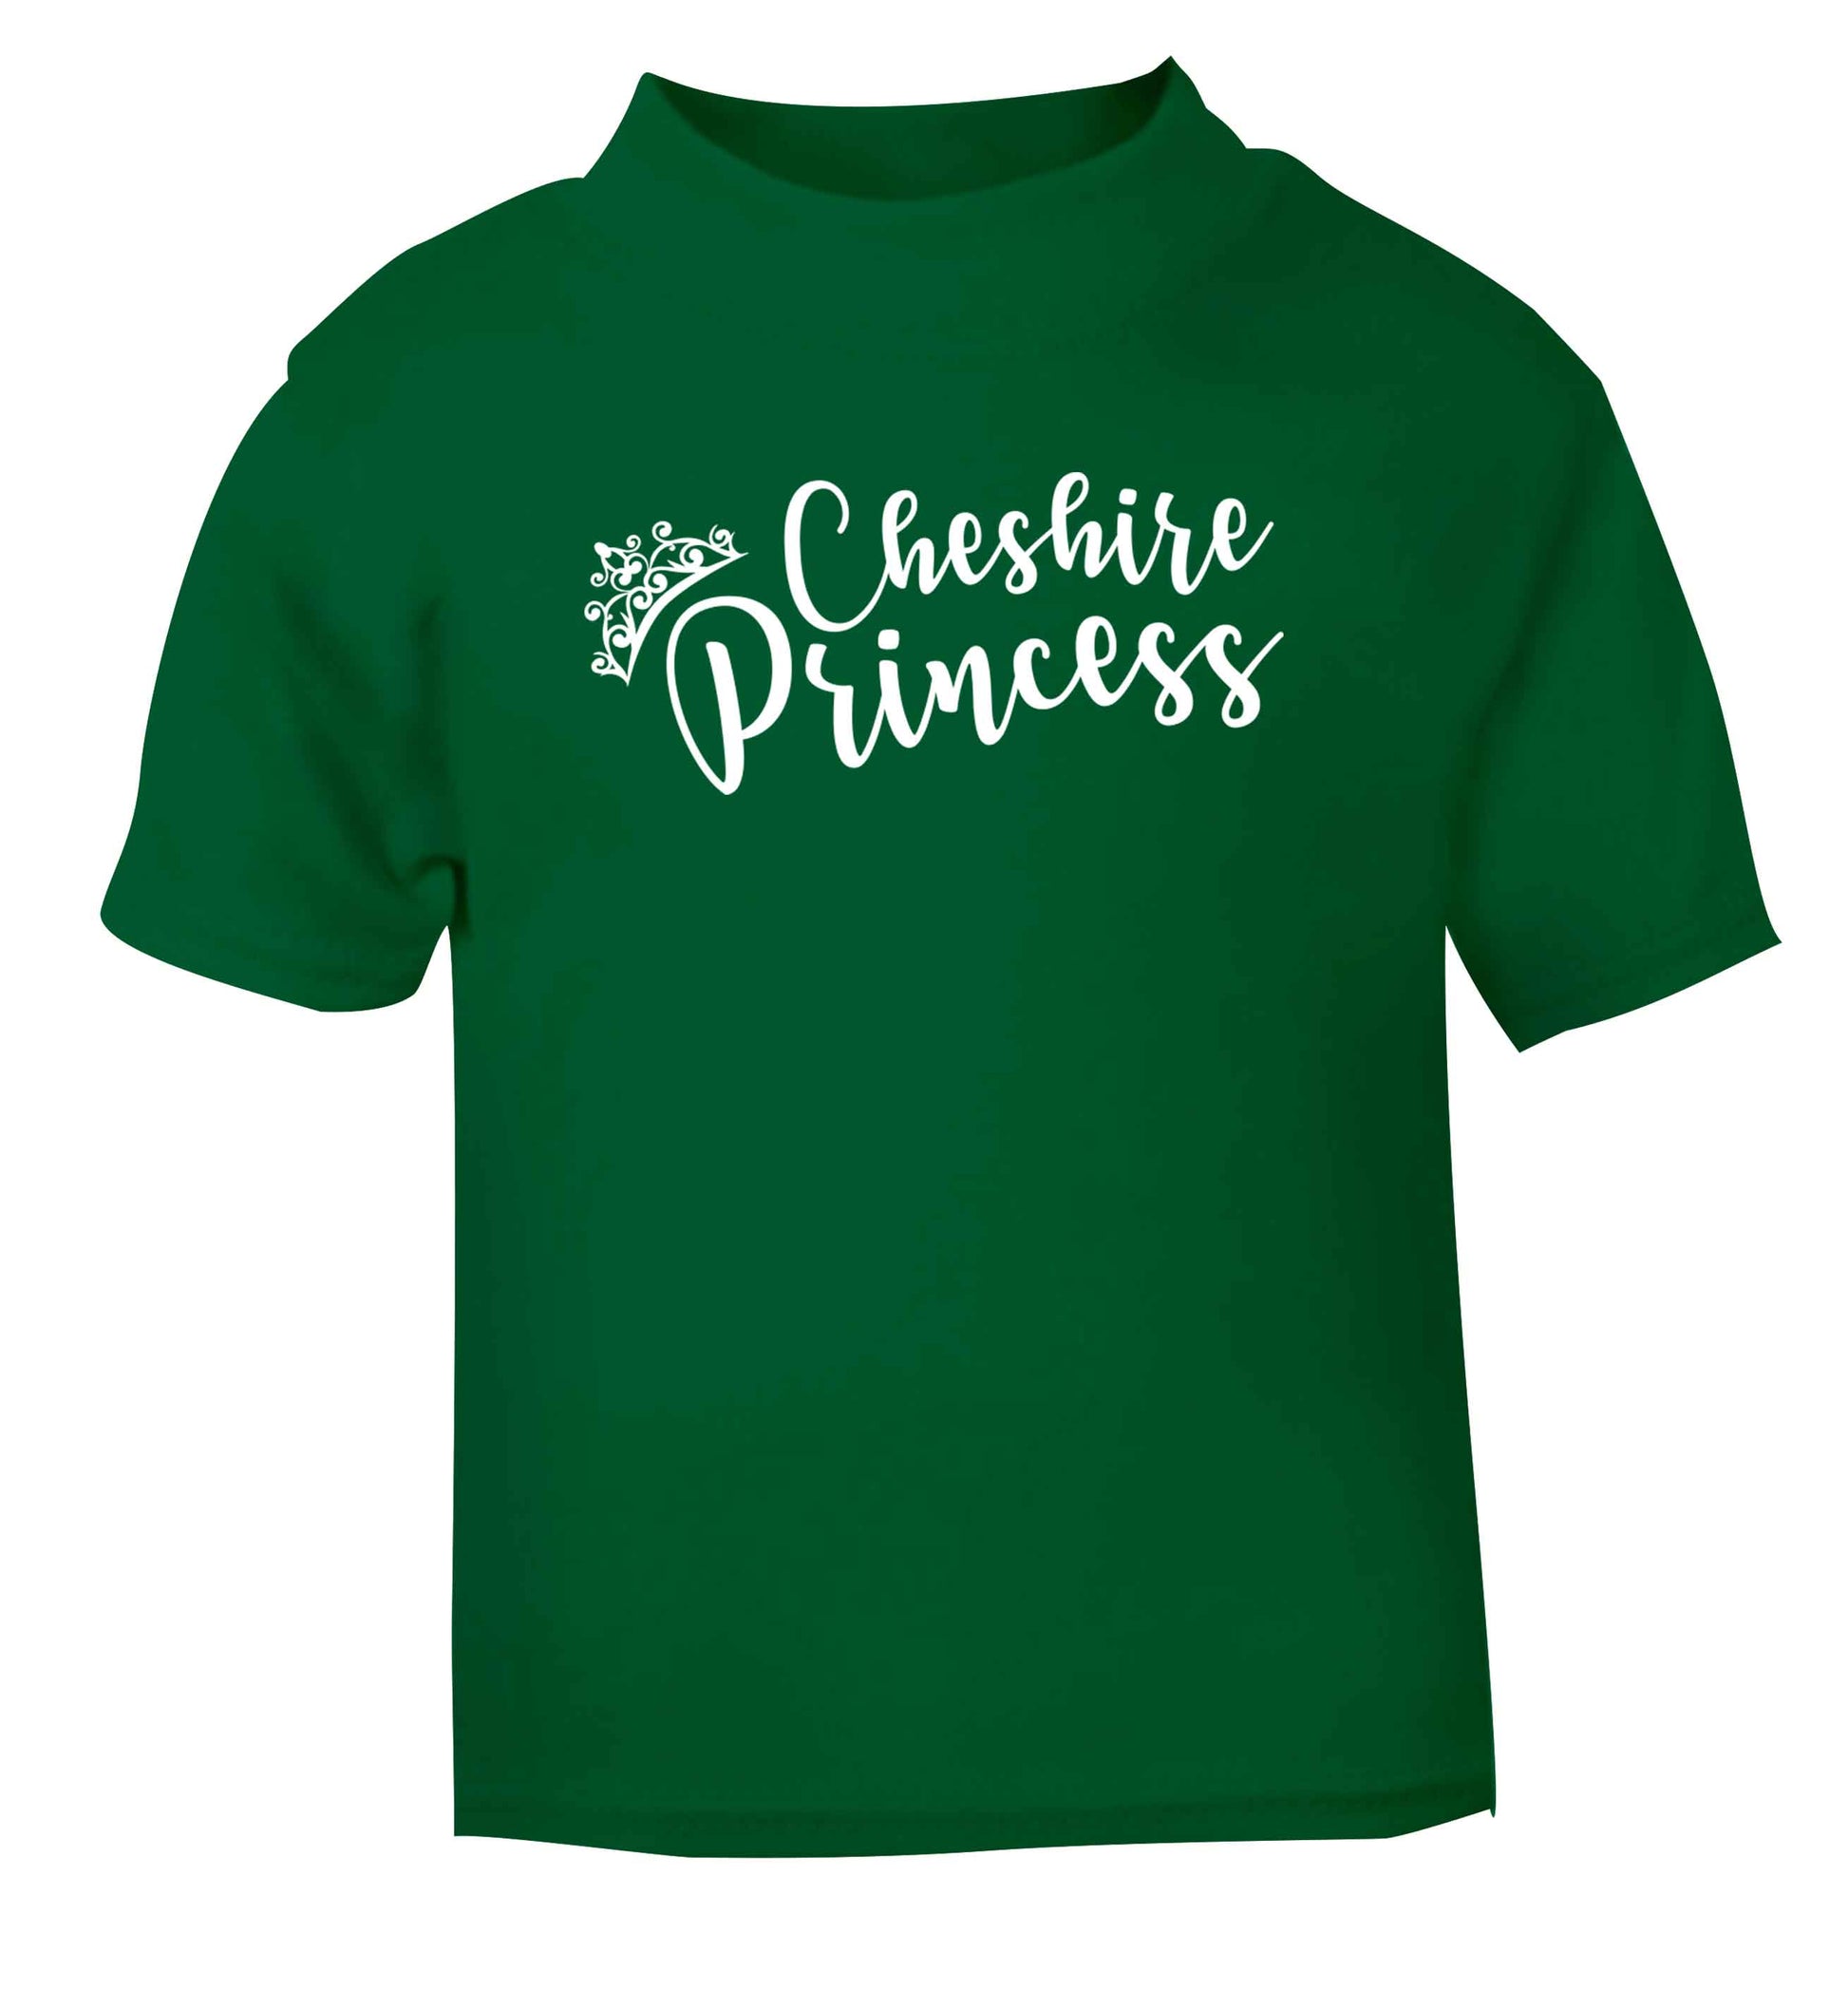 Cheshire princess green Baby Toddler Tshirt 2 Years